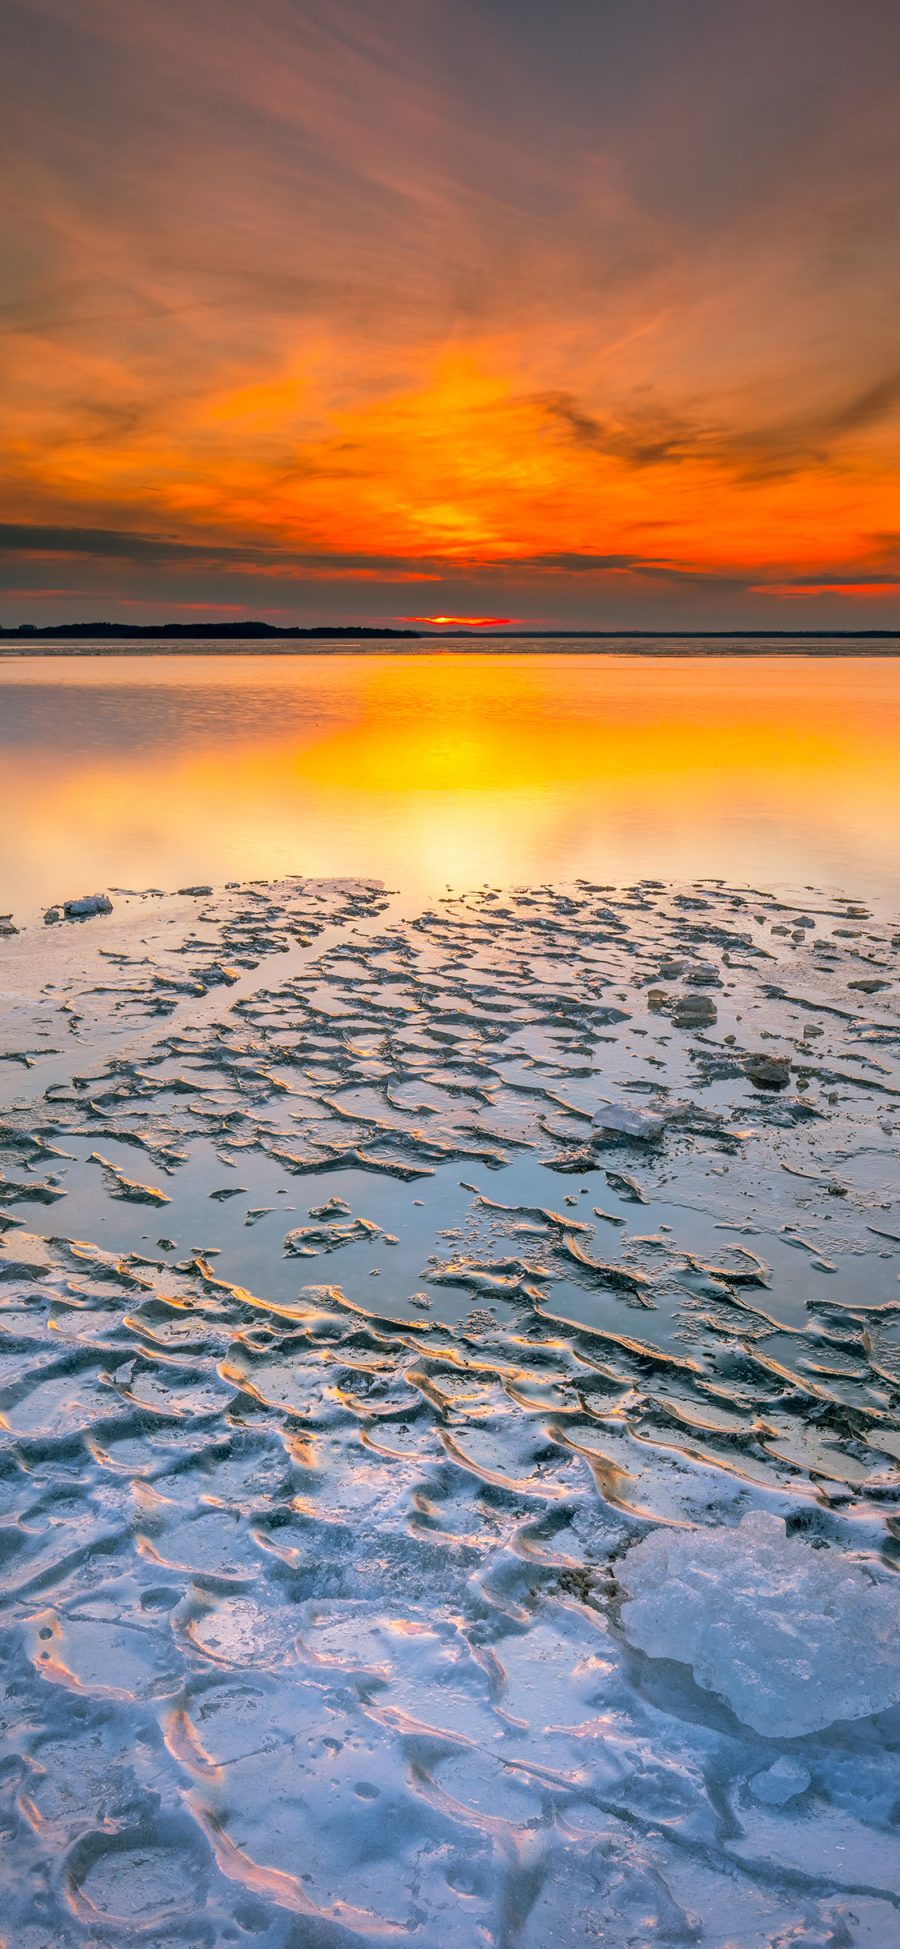 [2436×1125]夕阳 海岸 海边 冰块 冰川 苹果手机壁纸图片